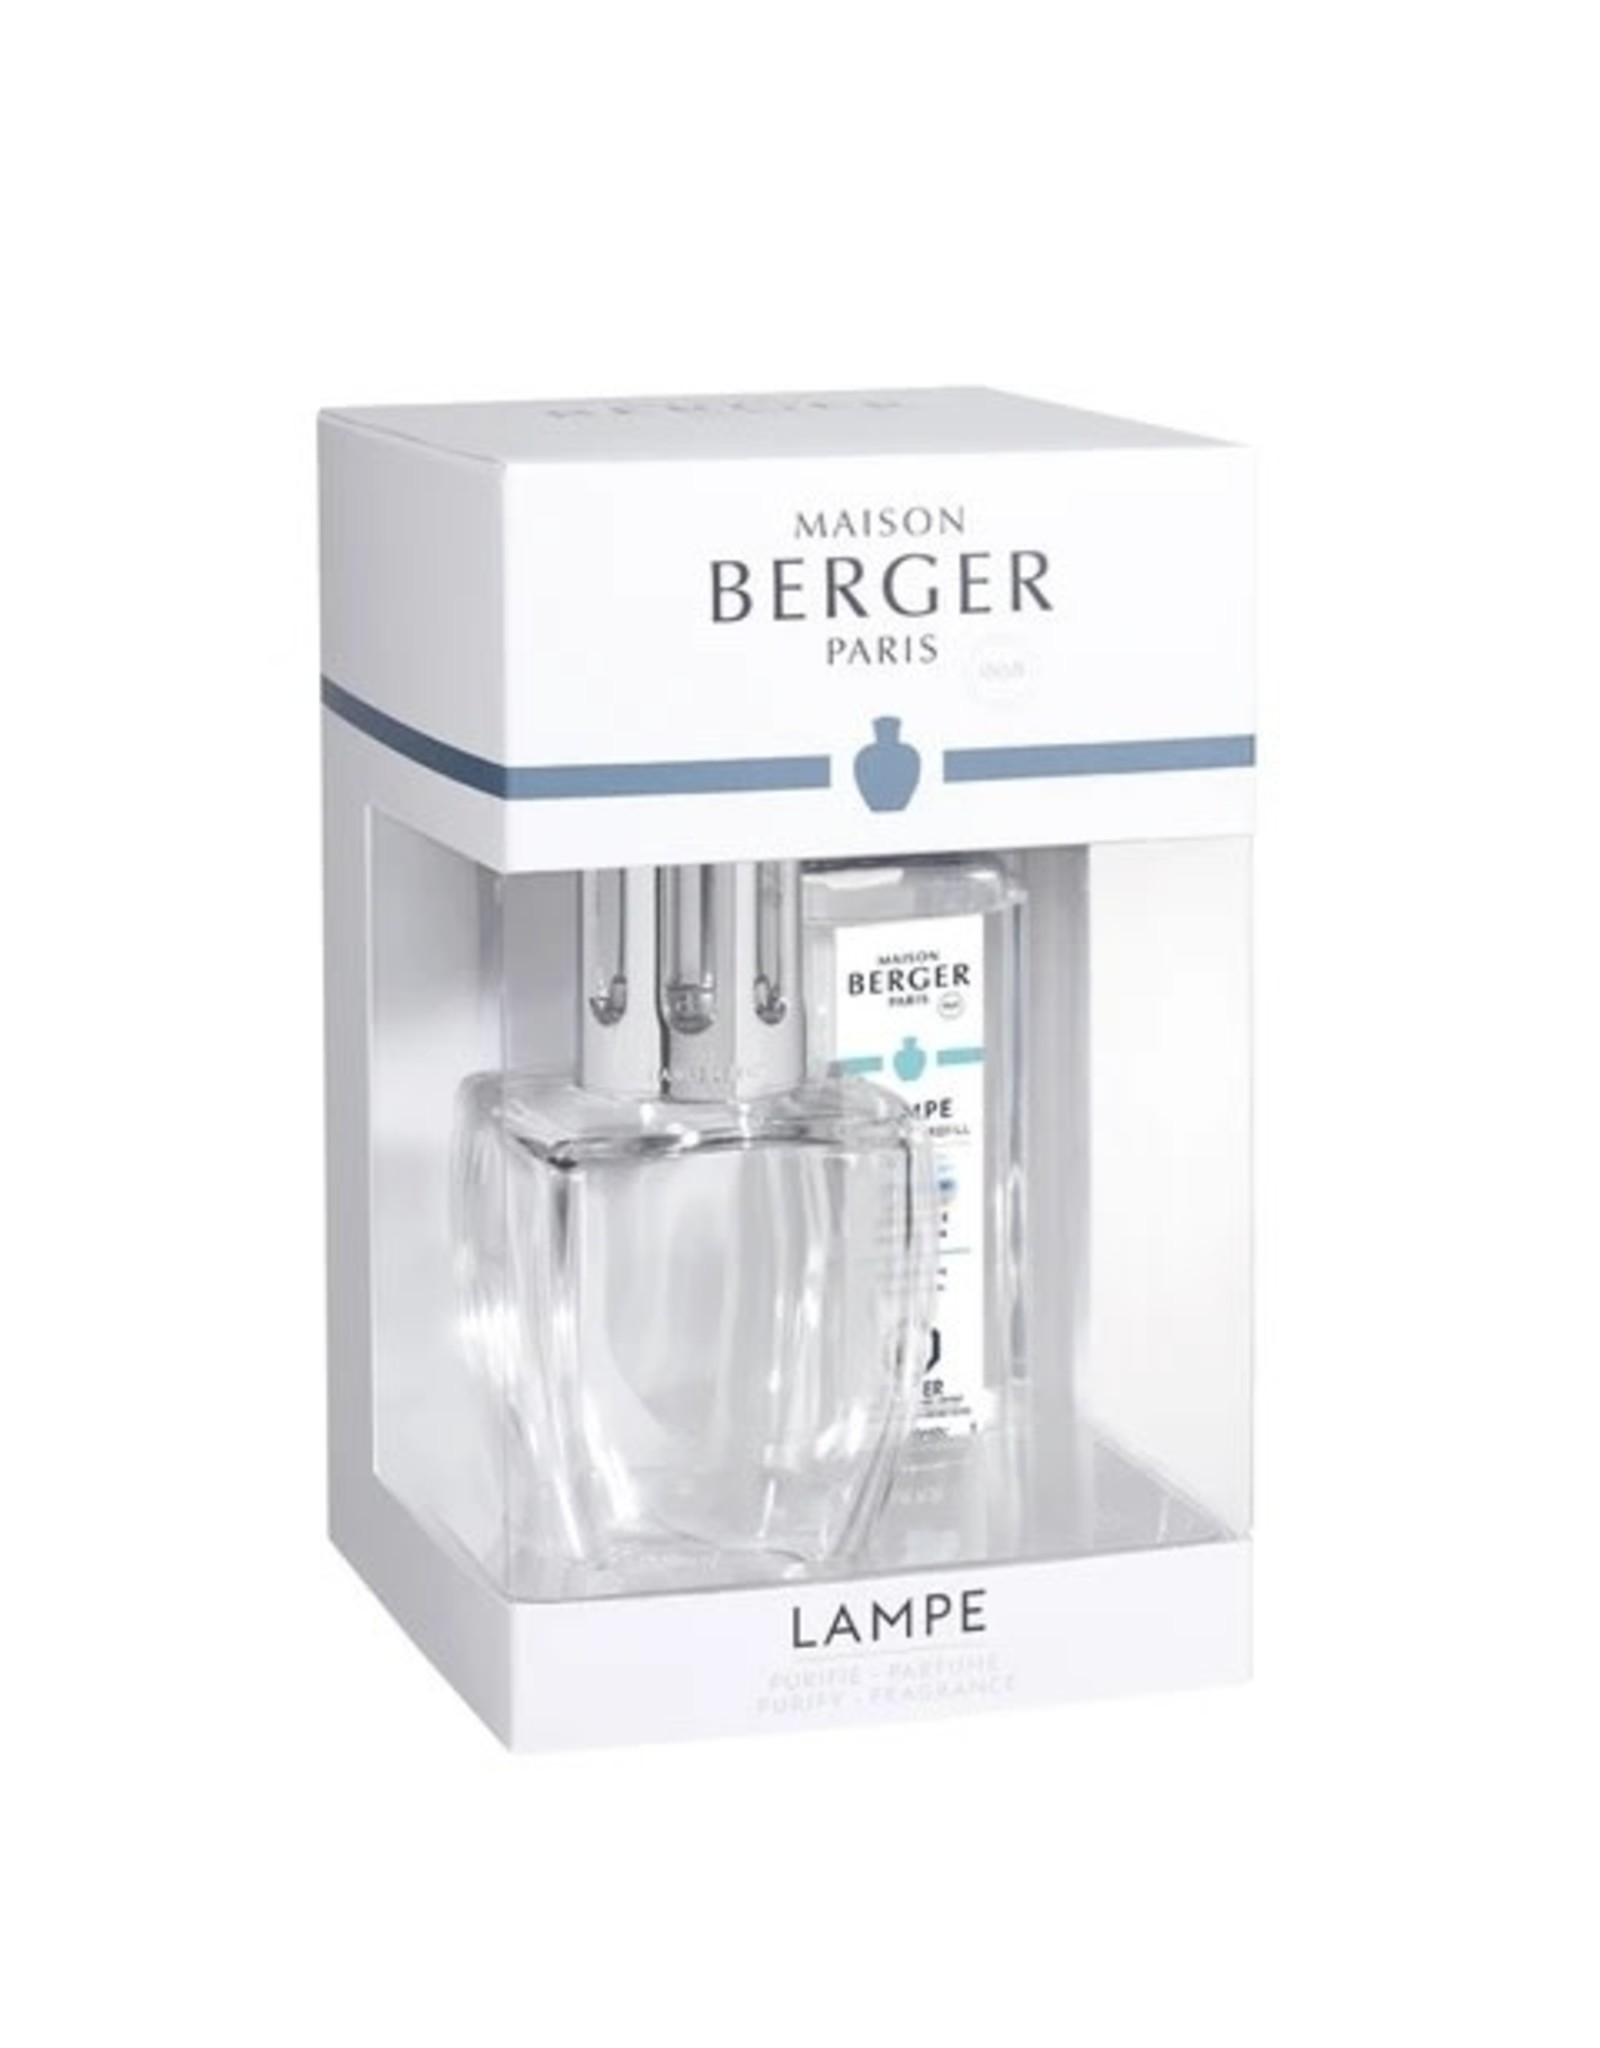 Maison Berger June Glass Lampe Berger Gift Set - Clear